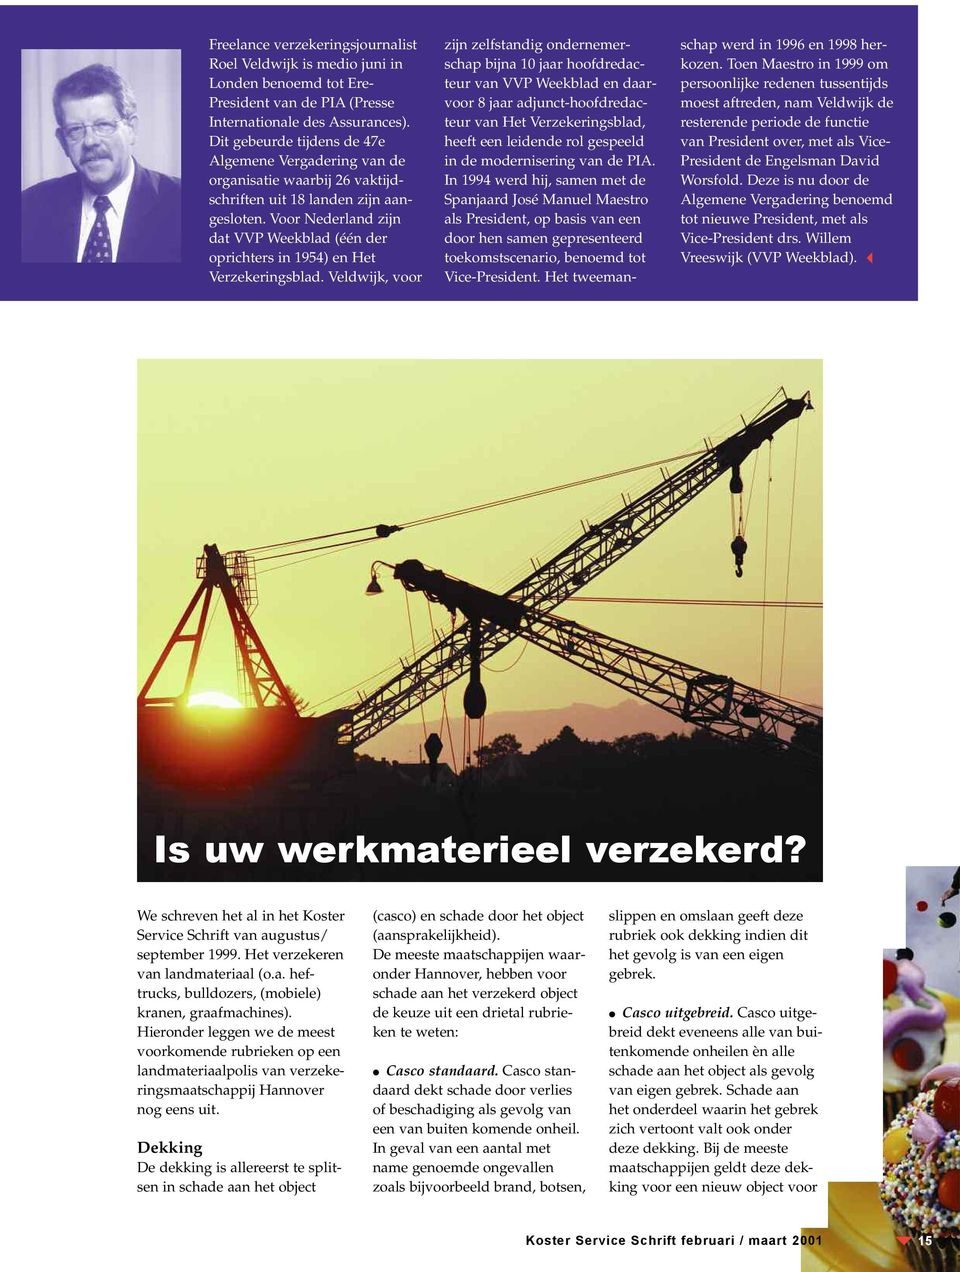 Voor Nederland zijn dat VVP Weekblad (één der oprichters in 1954) en Het Verzekeringsblad.